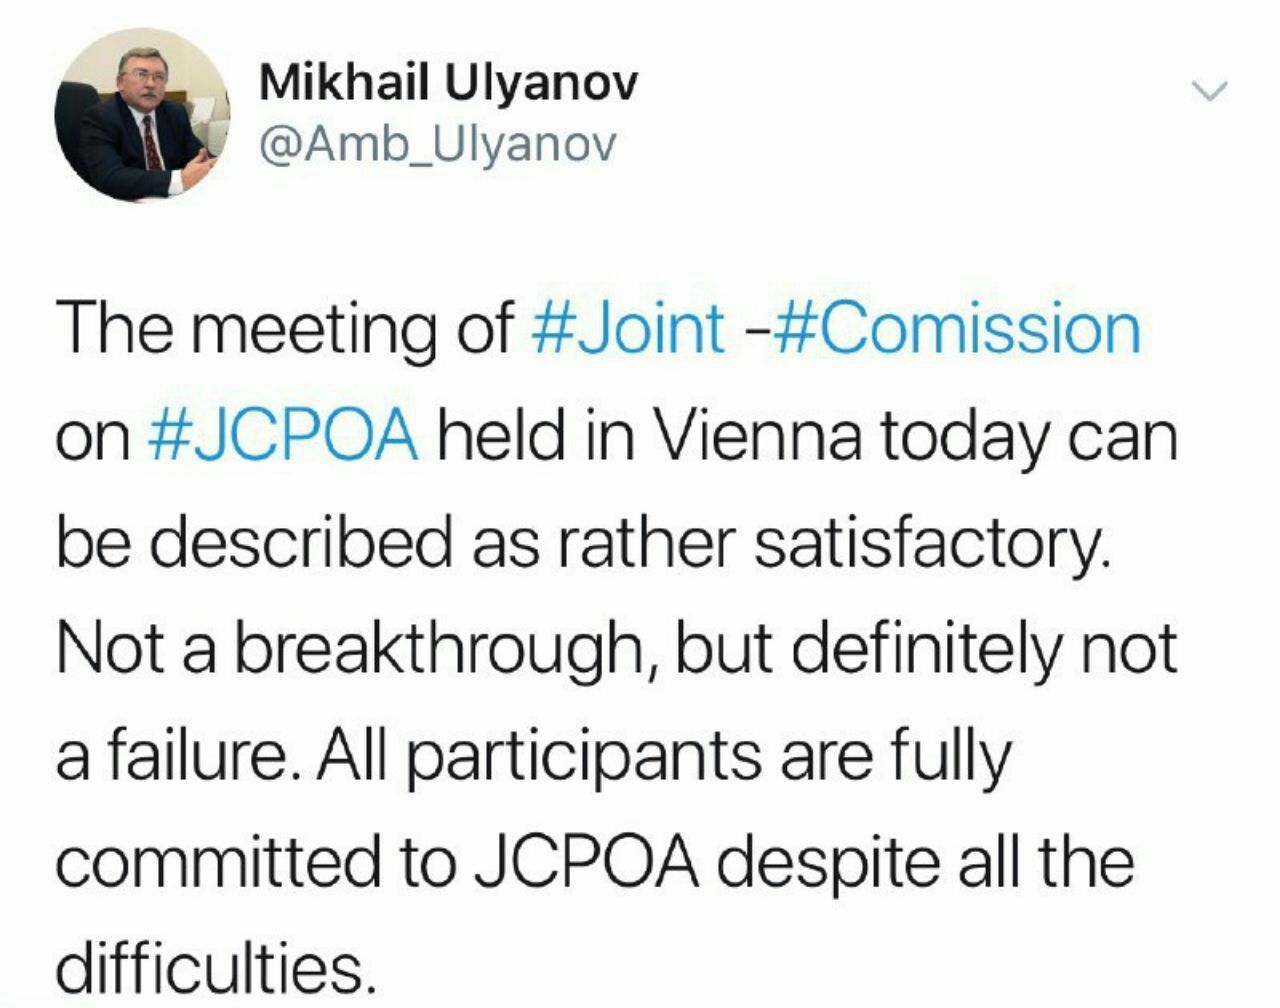 ️توصیف میخائیل اولیانوف از جلسه امروز کمیسیون مشترک برجام